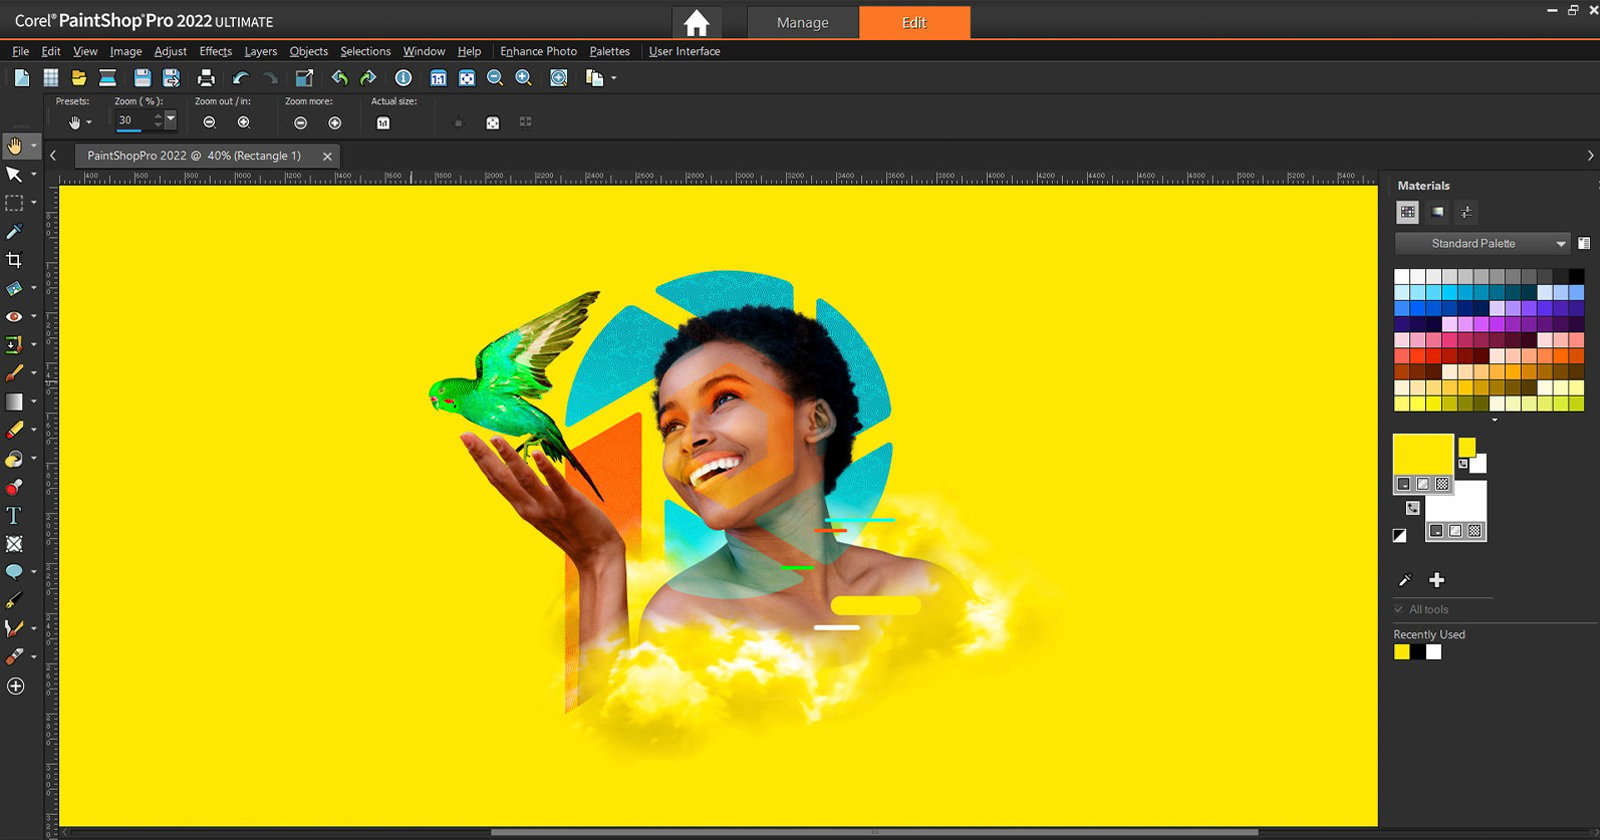 Corel's PaintShop Pro 2022 Comes With New AI Photo Editing